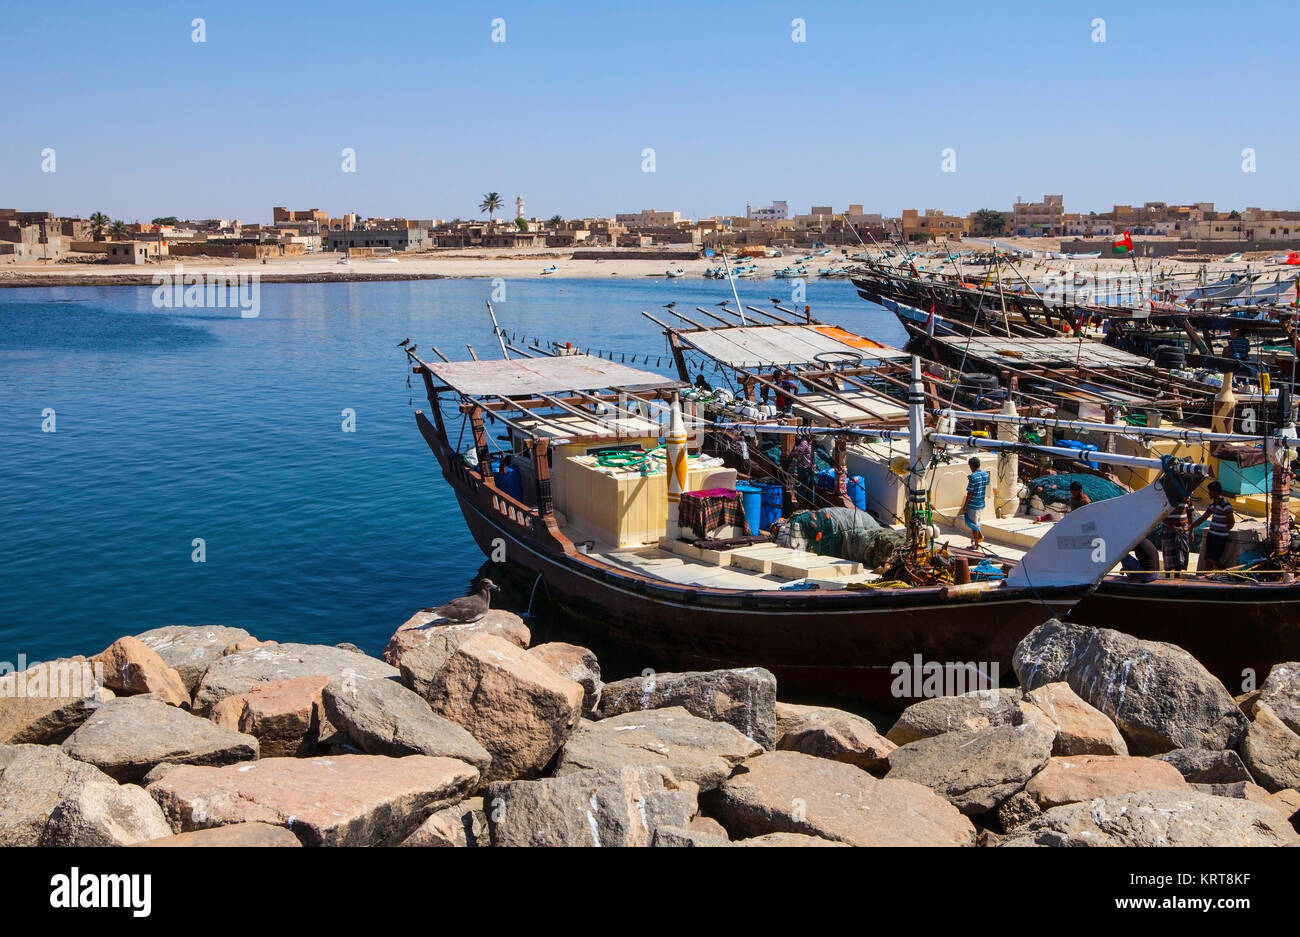 MIRBAT, Oman - gennaio 07,2016: barche da pesca (Dhow) nella porta di Mirbat. Dhofar, Oman. Foto Stock